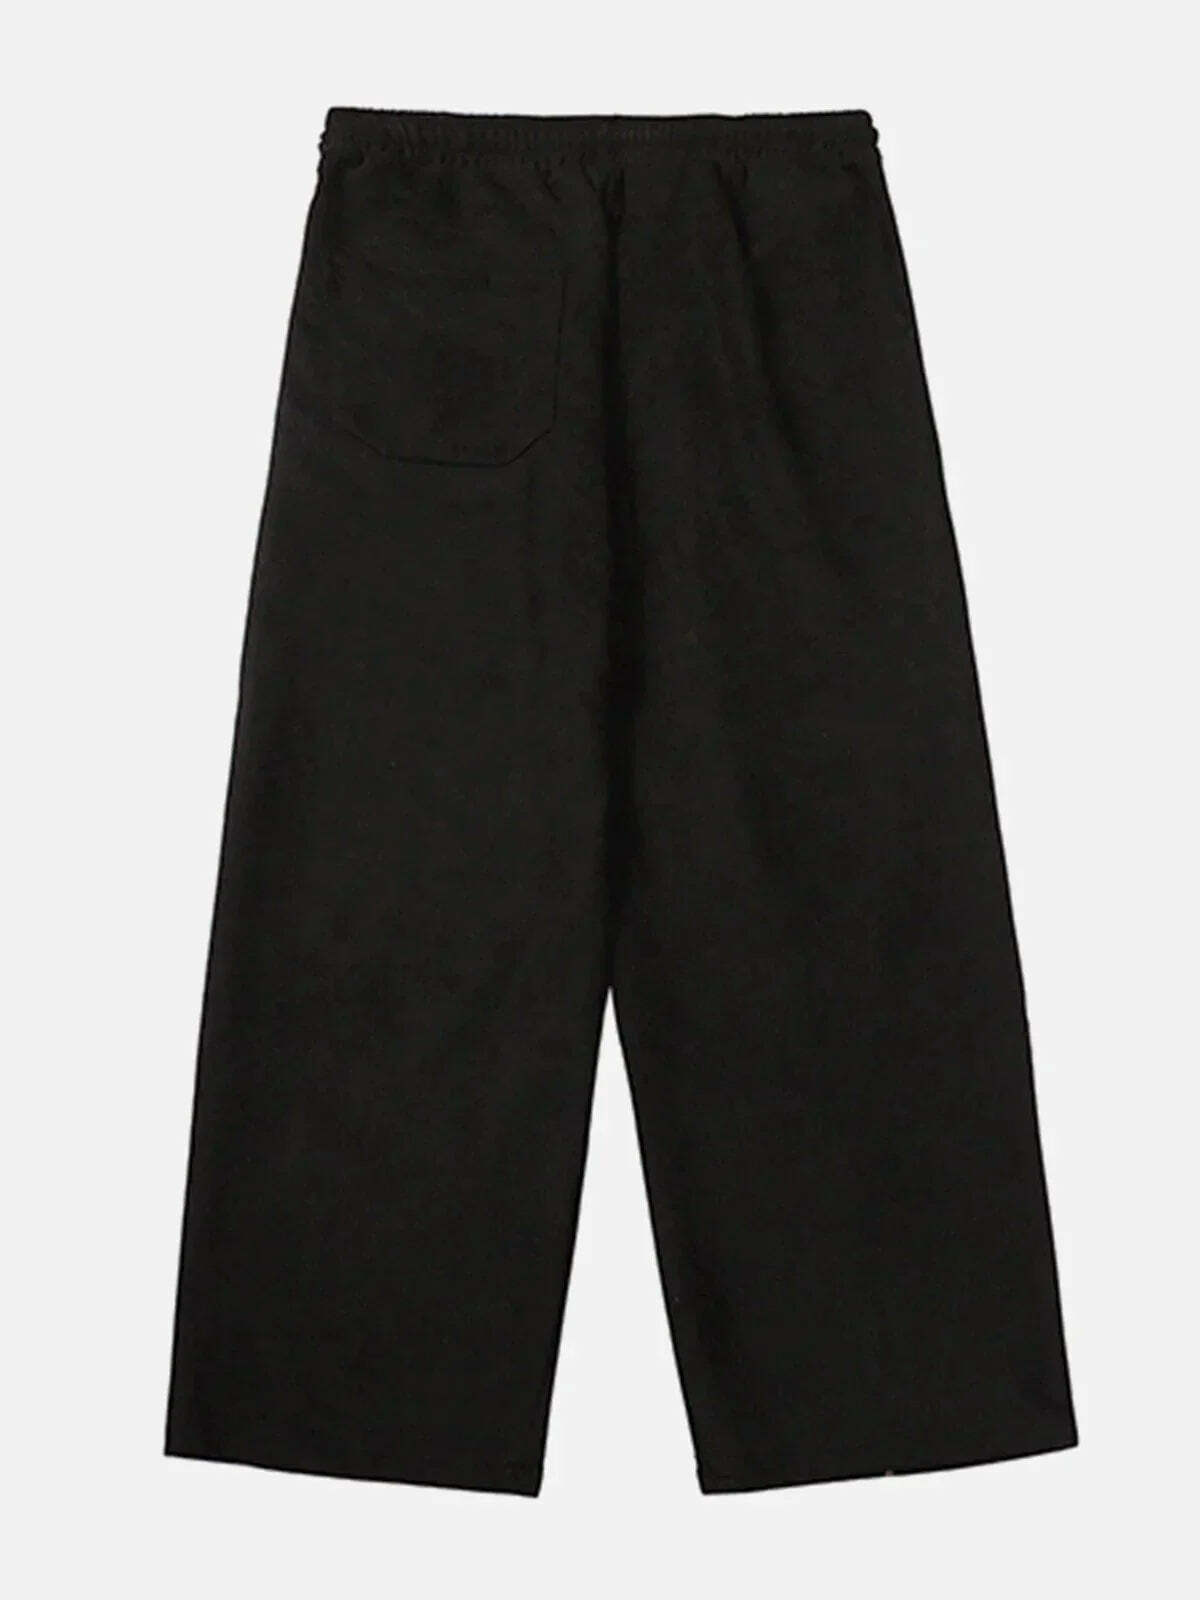 zipup suede cargo pants edgy streetwear essential 6493